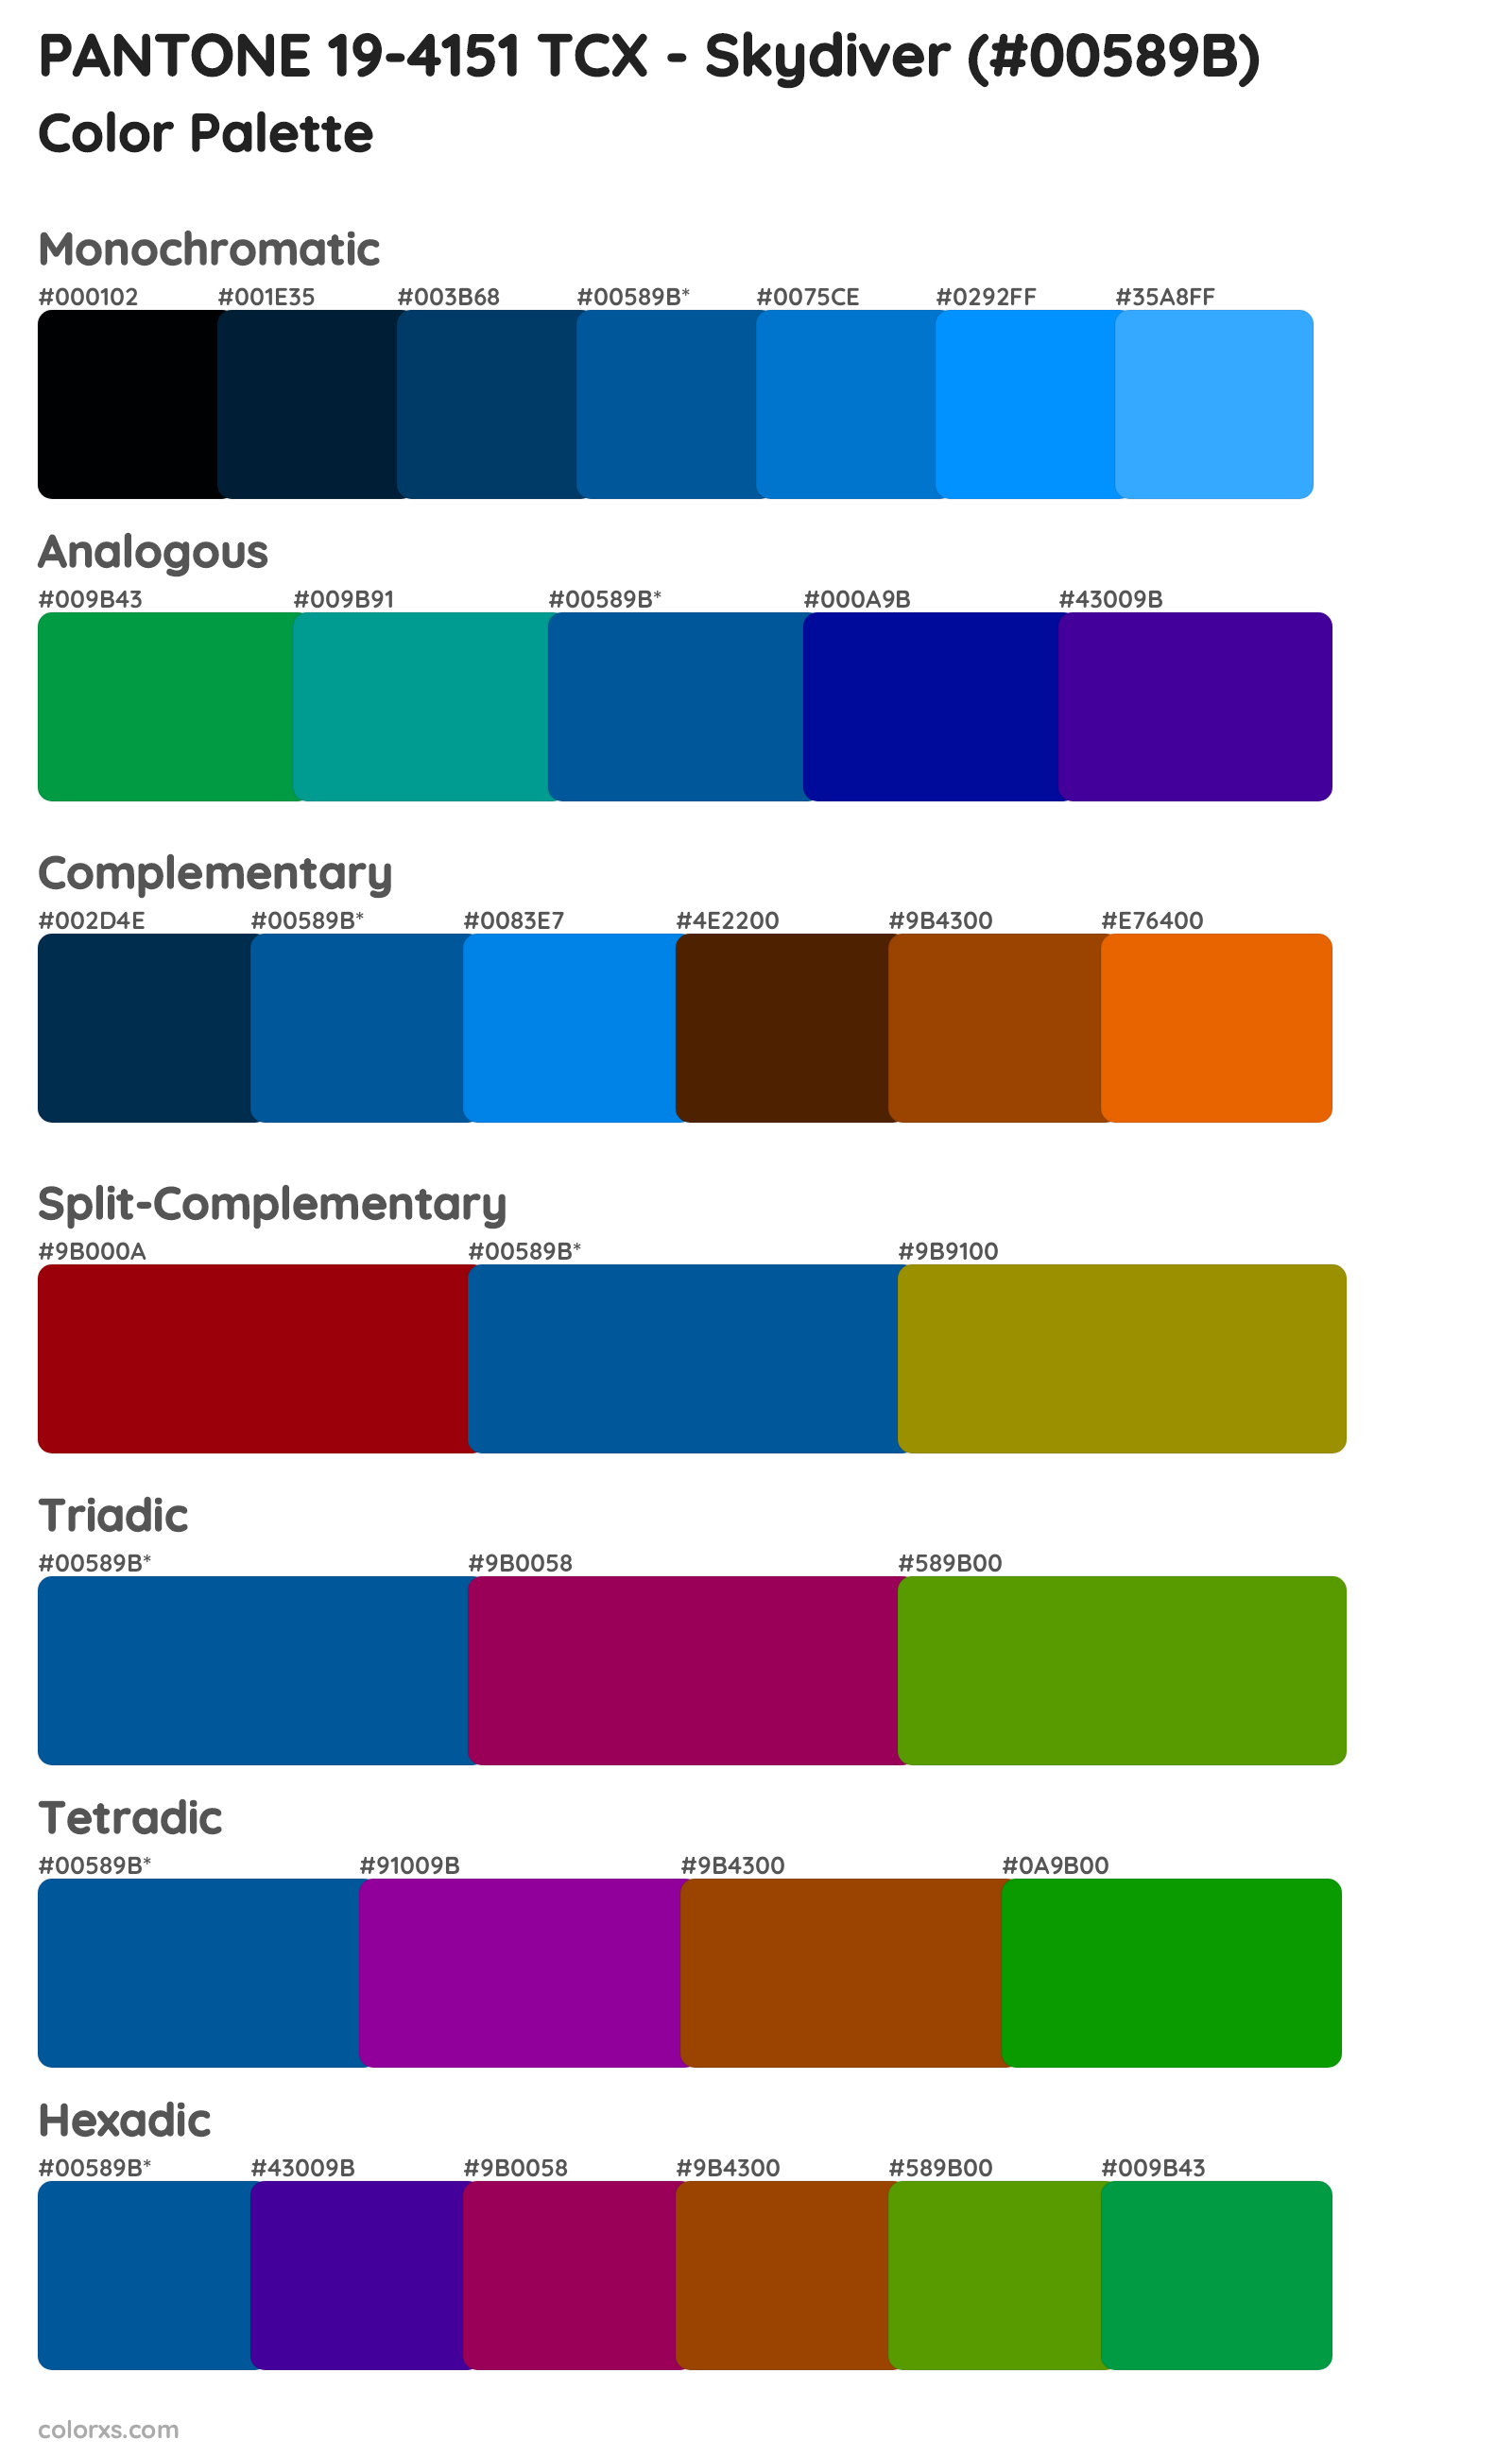 PANTONE 19-4151 TCX - Skydiver Color Scheme Palettes